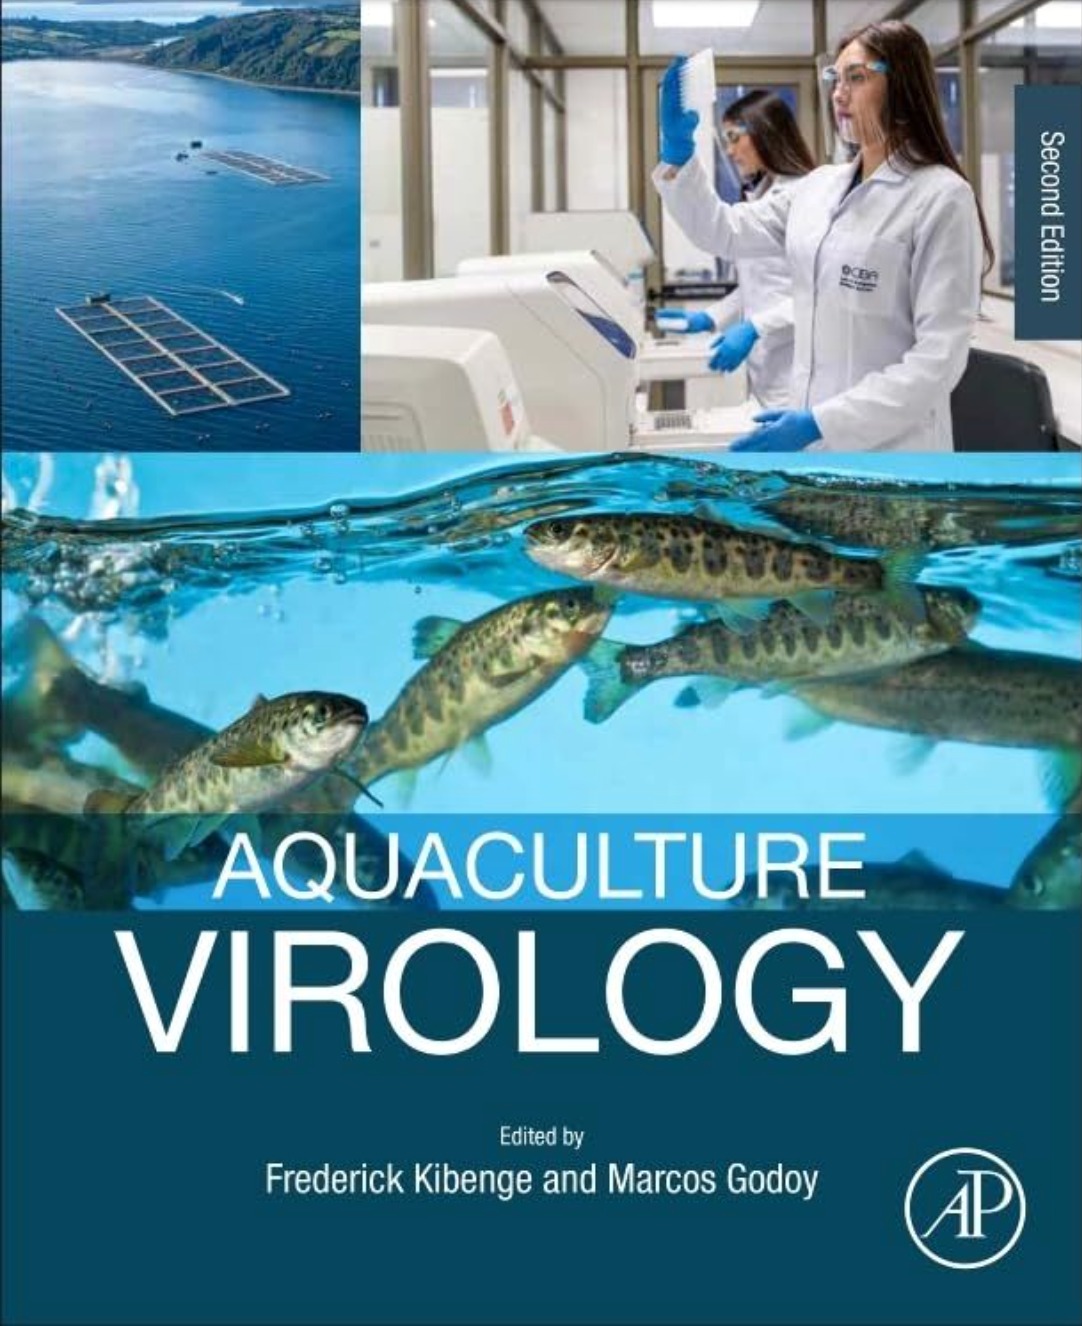 [VIDEO] Reconocido investigador chileno coedita completo libro sobre virus en acuicultura